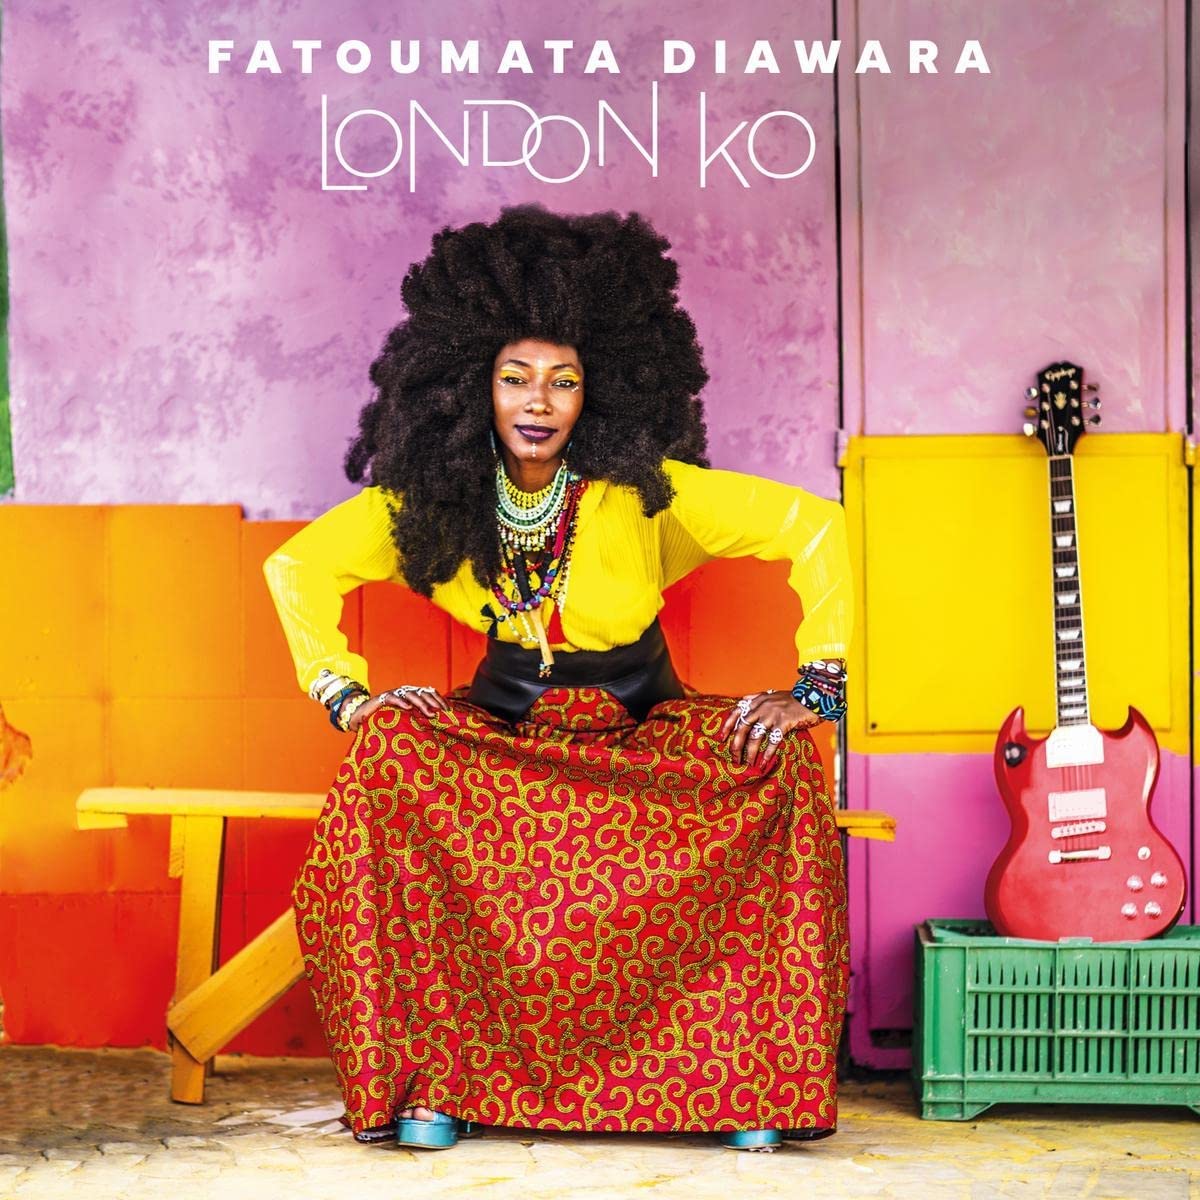 Diawara, Fatoumata London Ko -coloured-